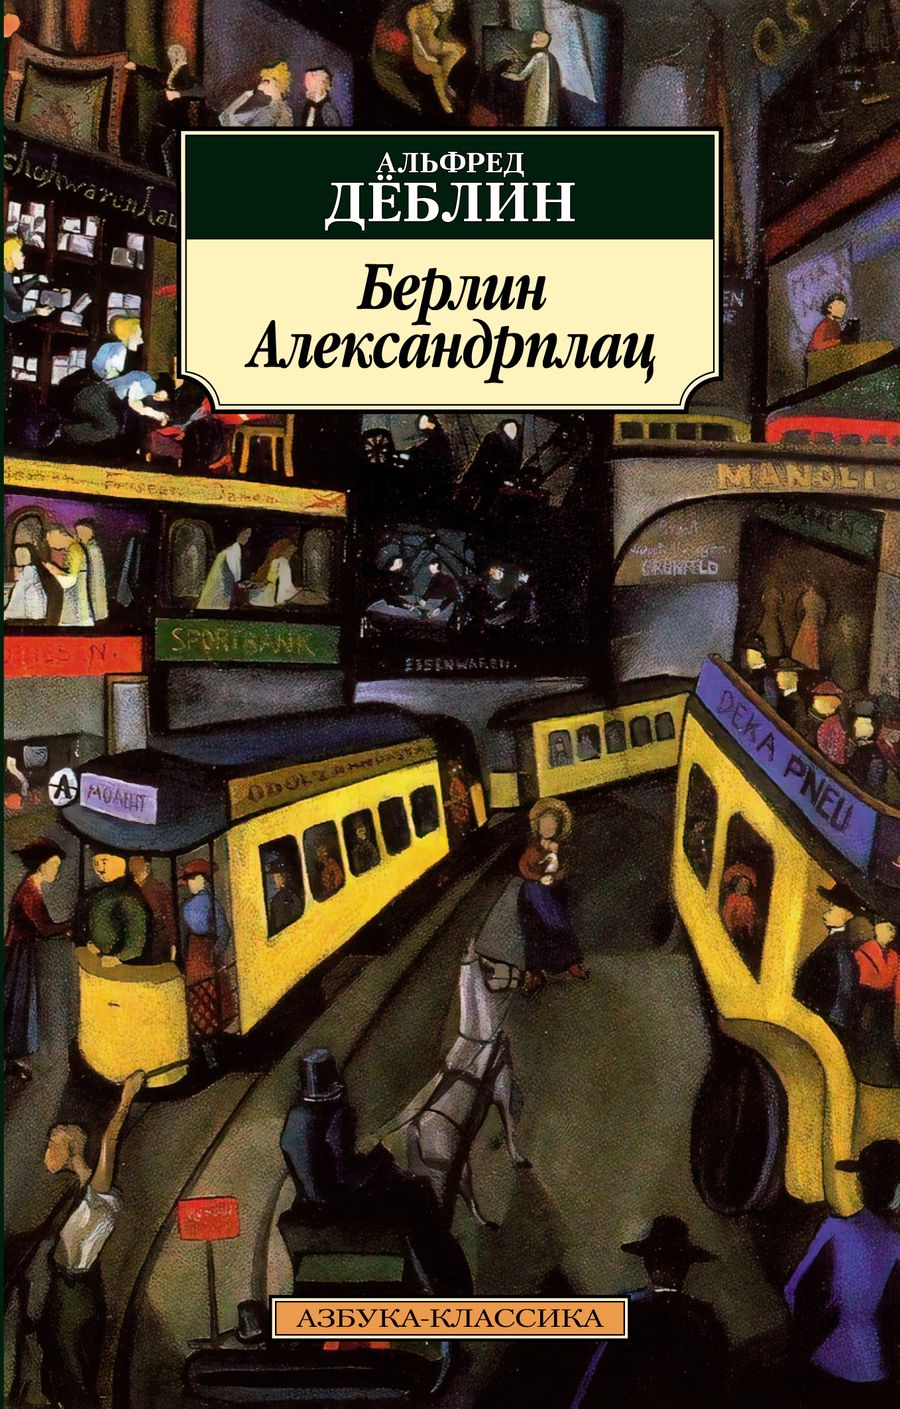 Обложка книги "Деблин: Берлин Александрплац"